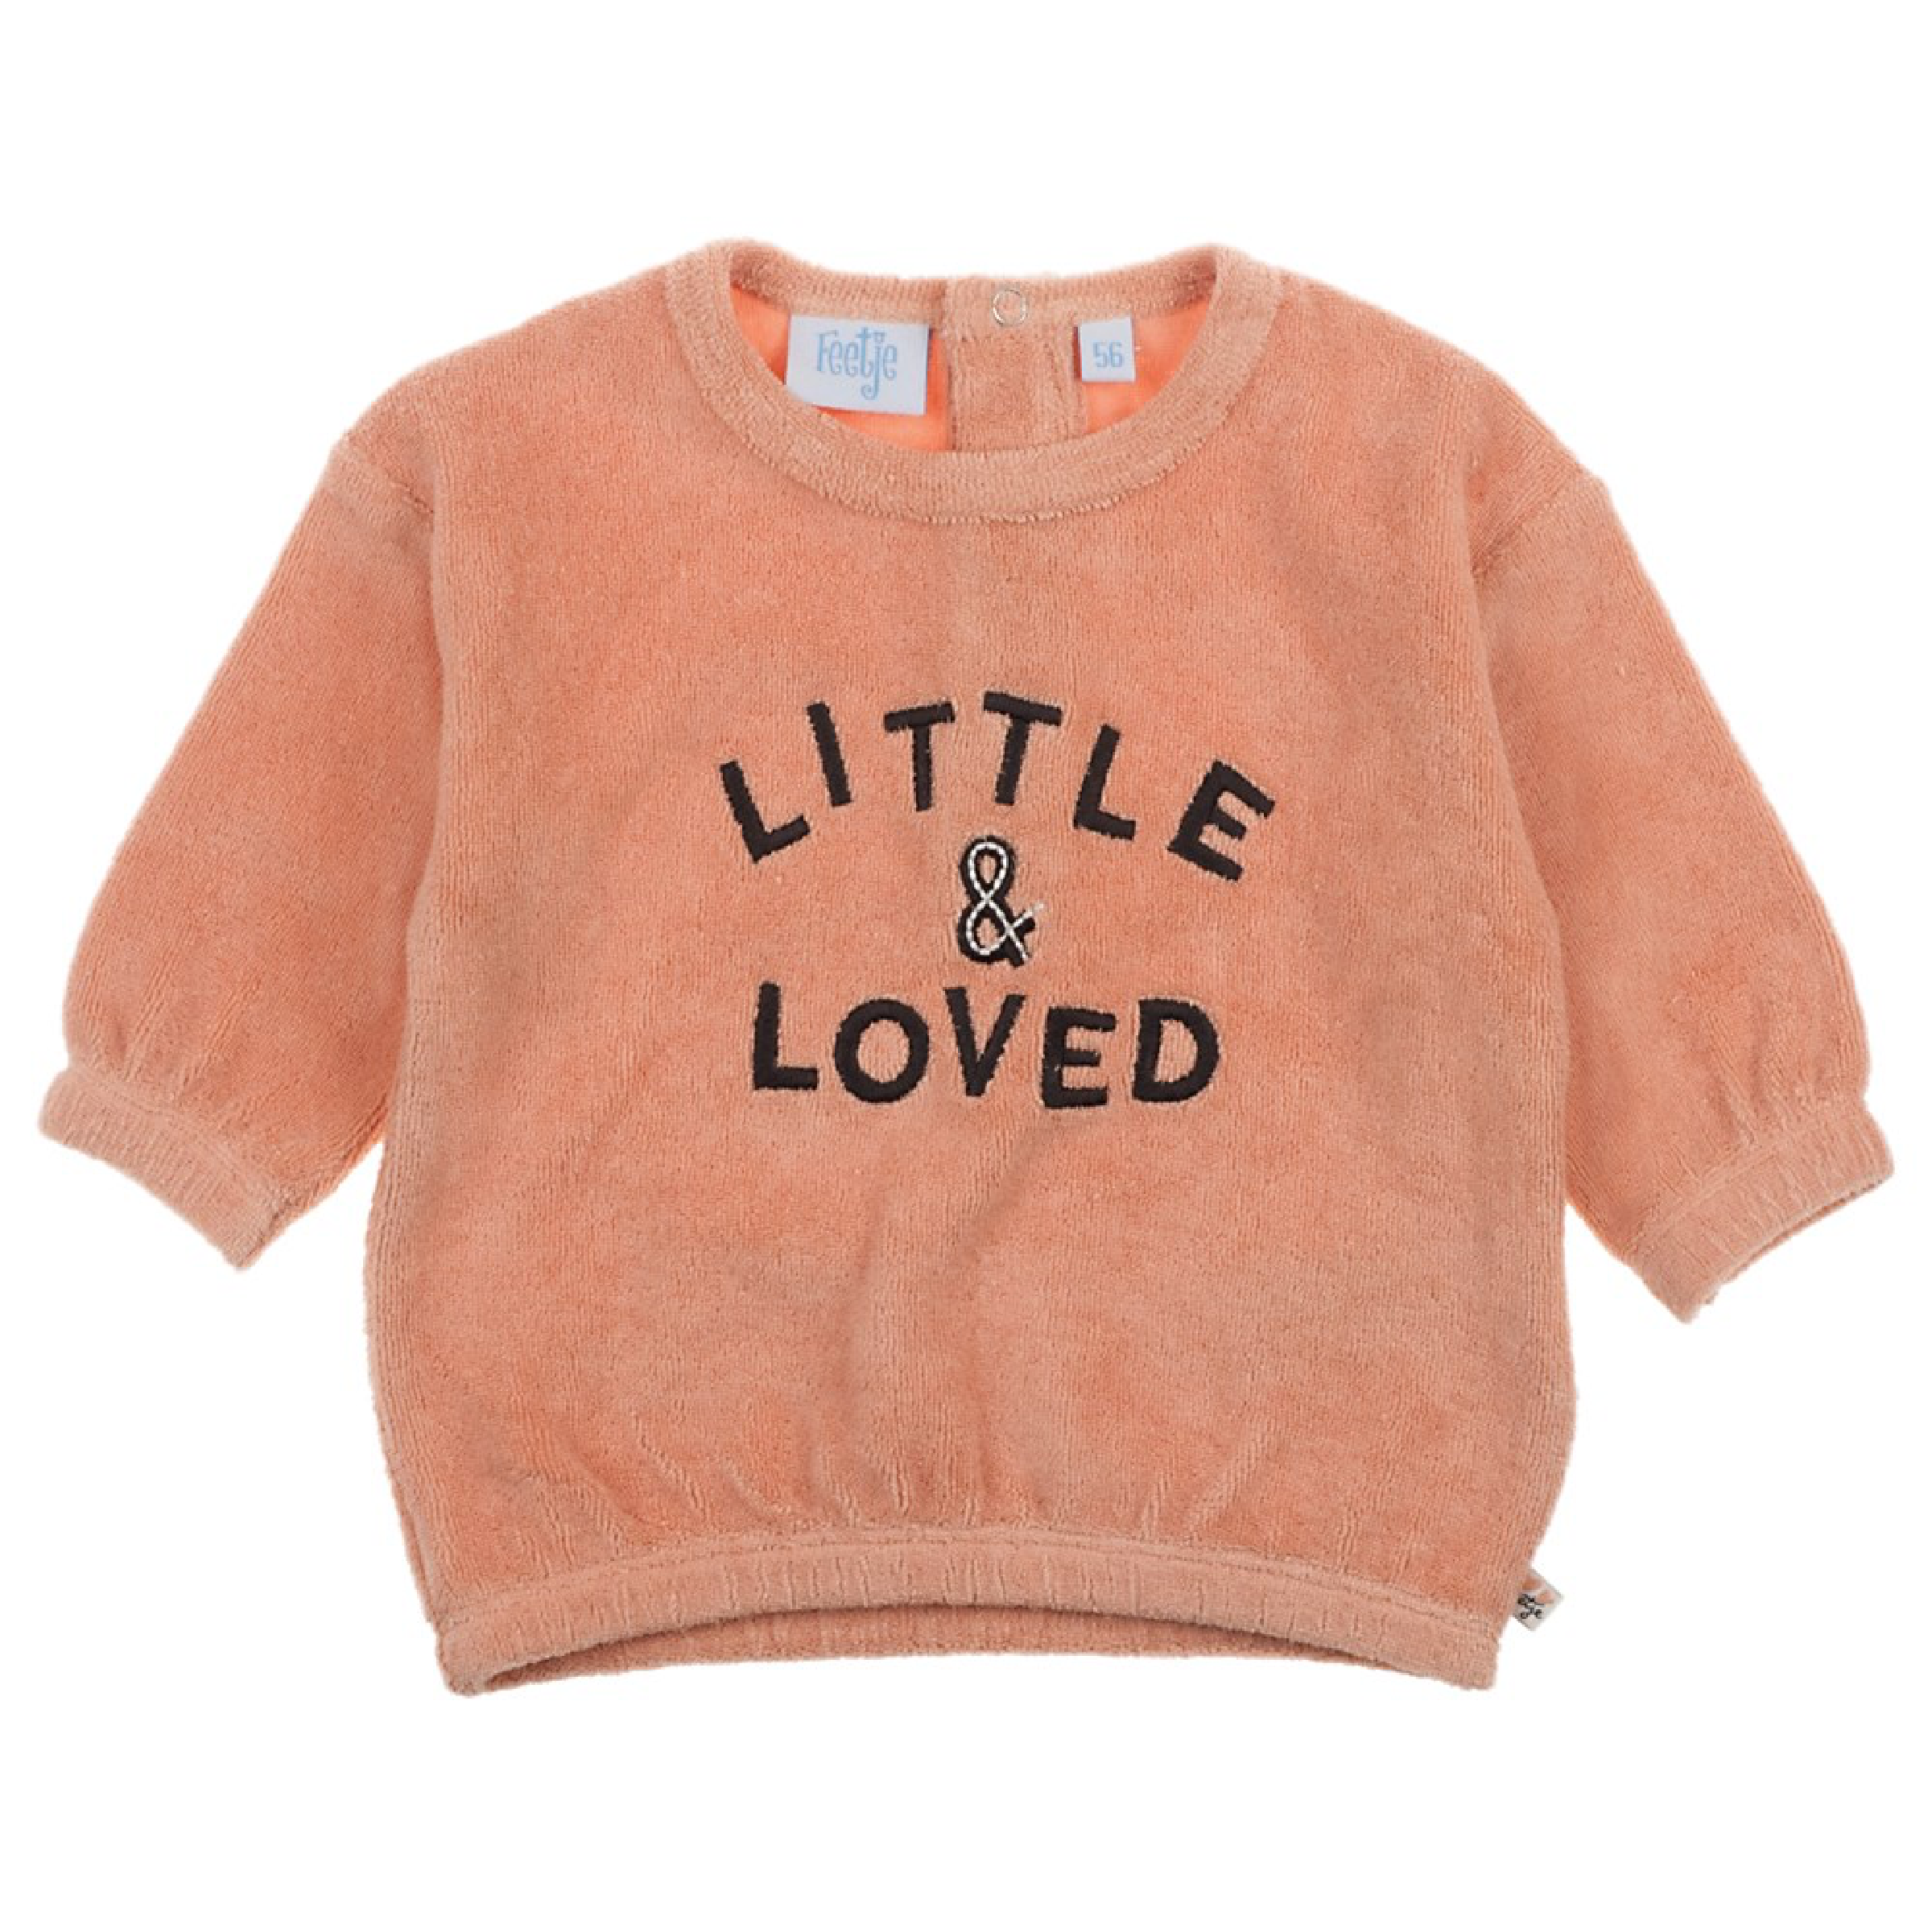 Meisjes Sweater - Little and Loved van Feetje in de kleur Roze in maat 68.